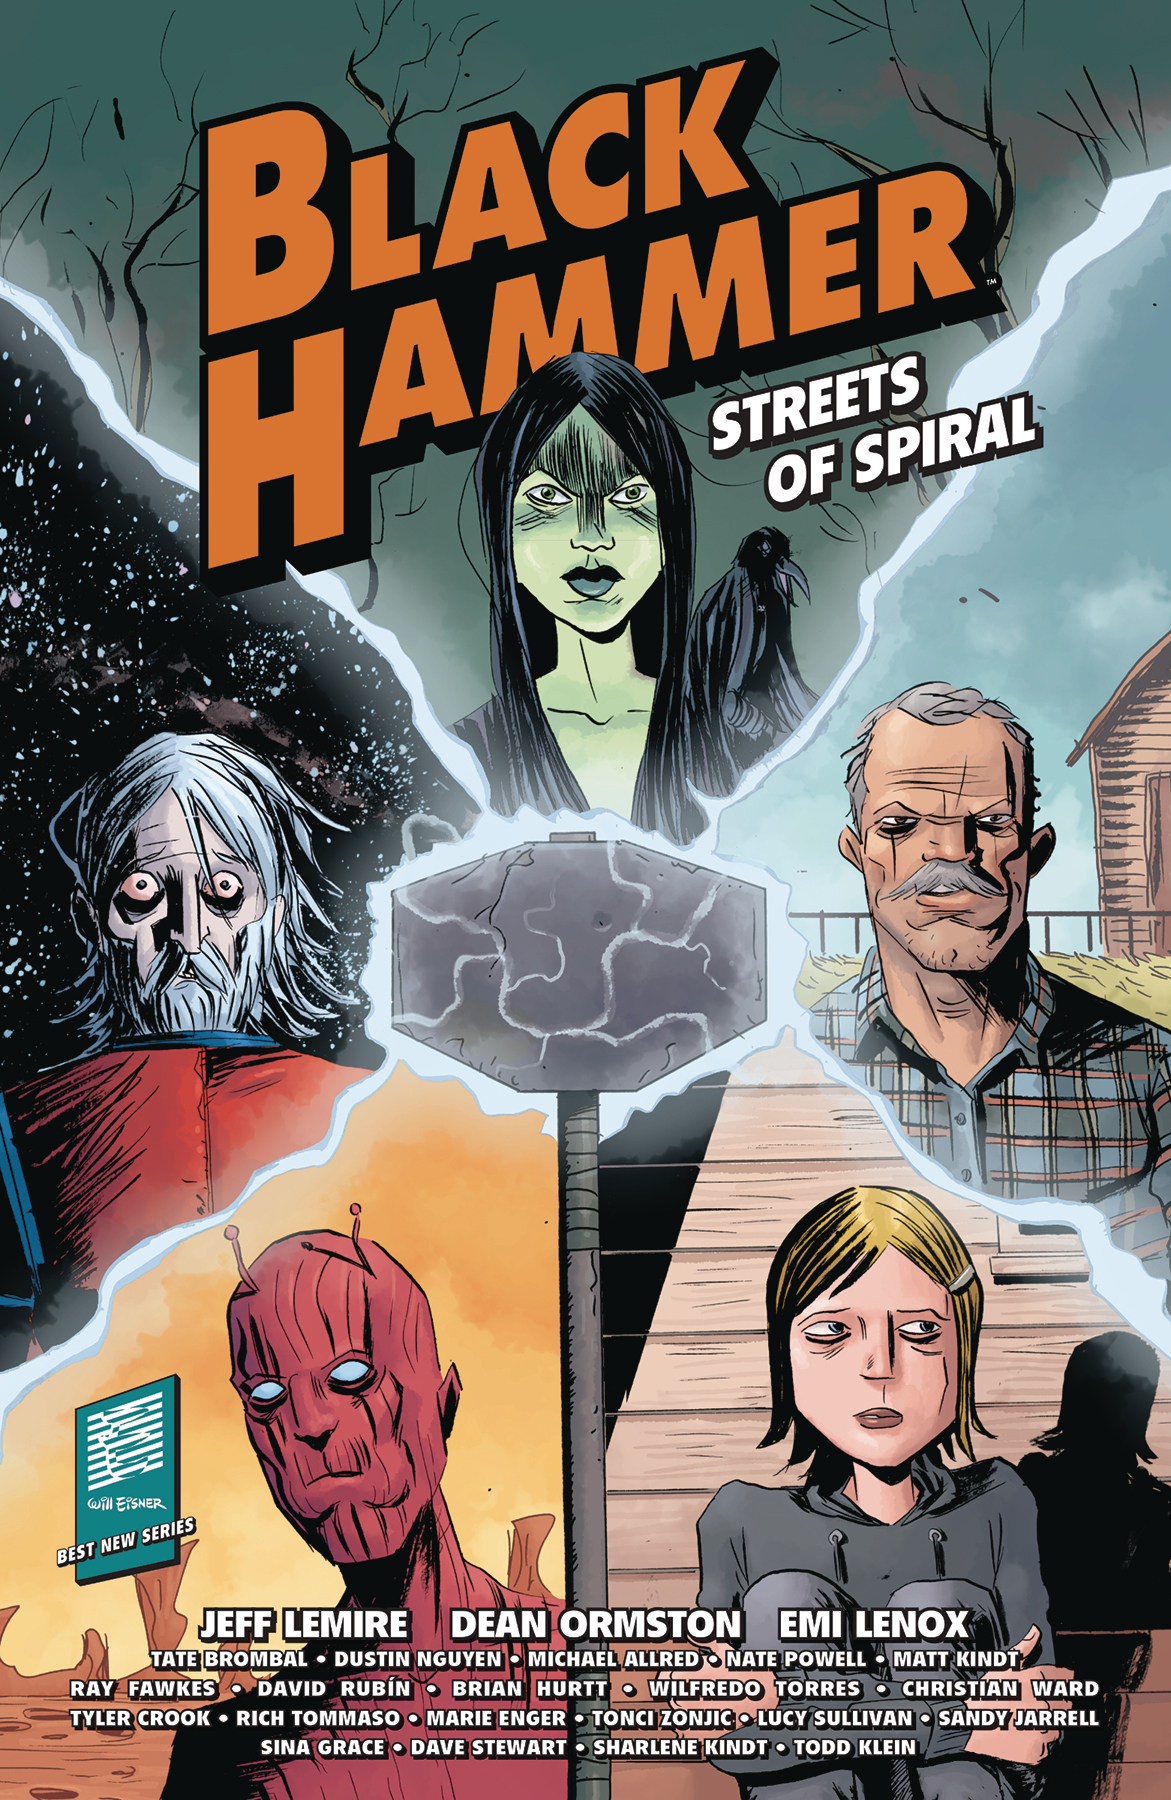 Black Hammer Streets of Spiral Graphic Novel